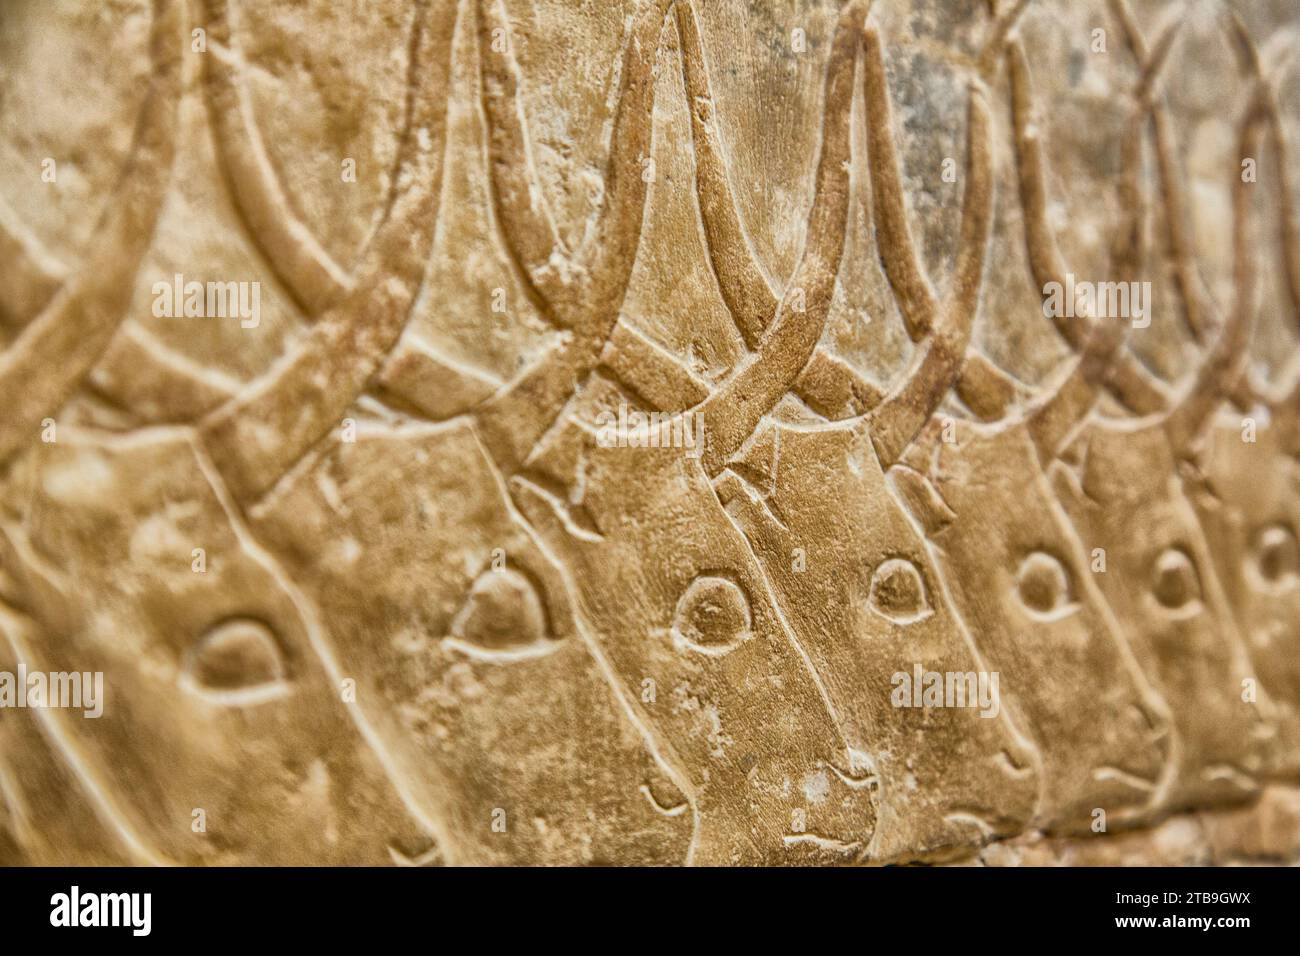 Nahaufnahme von Wasserbüffelhieroglyphen in Sakkara, einem Dorf mit alten, ägyptischen Grabstätten; Sakkara, Ägypten Stockfoto